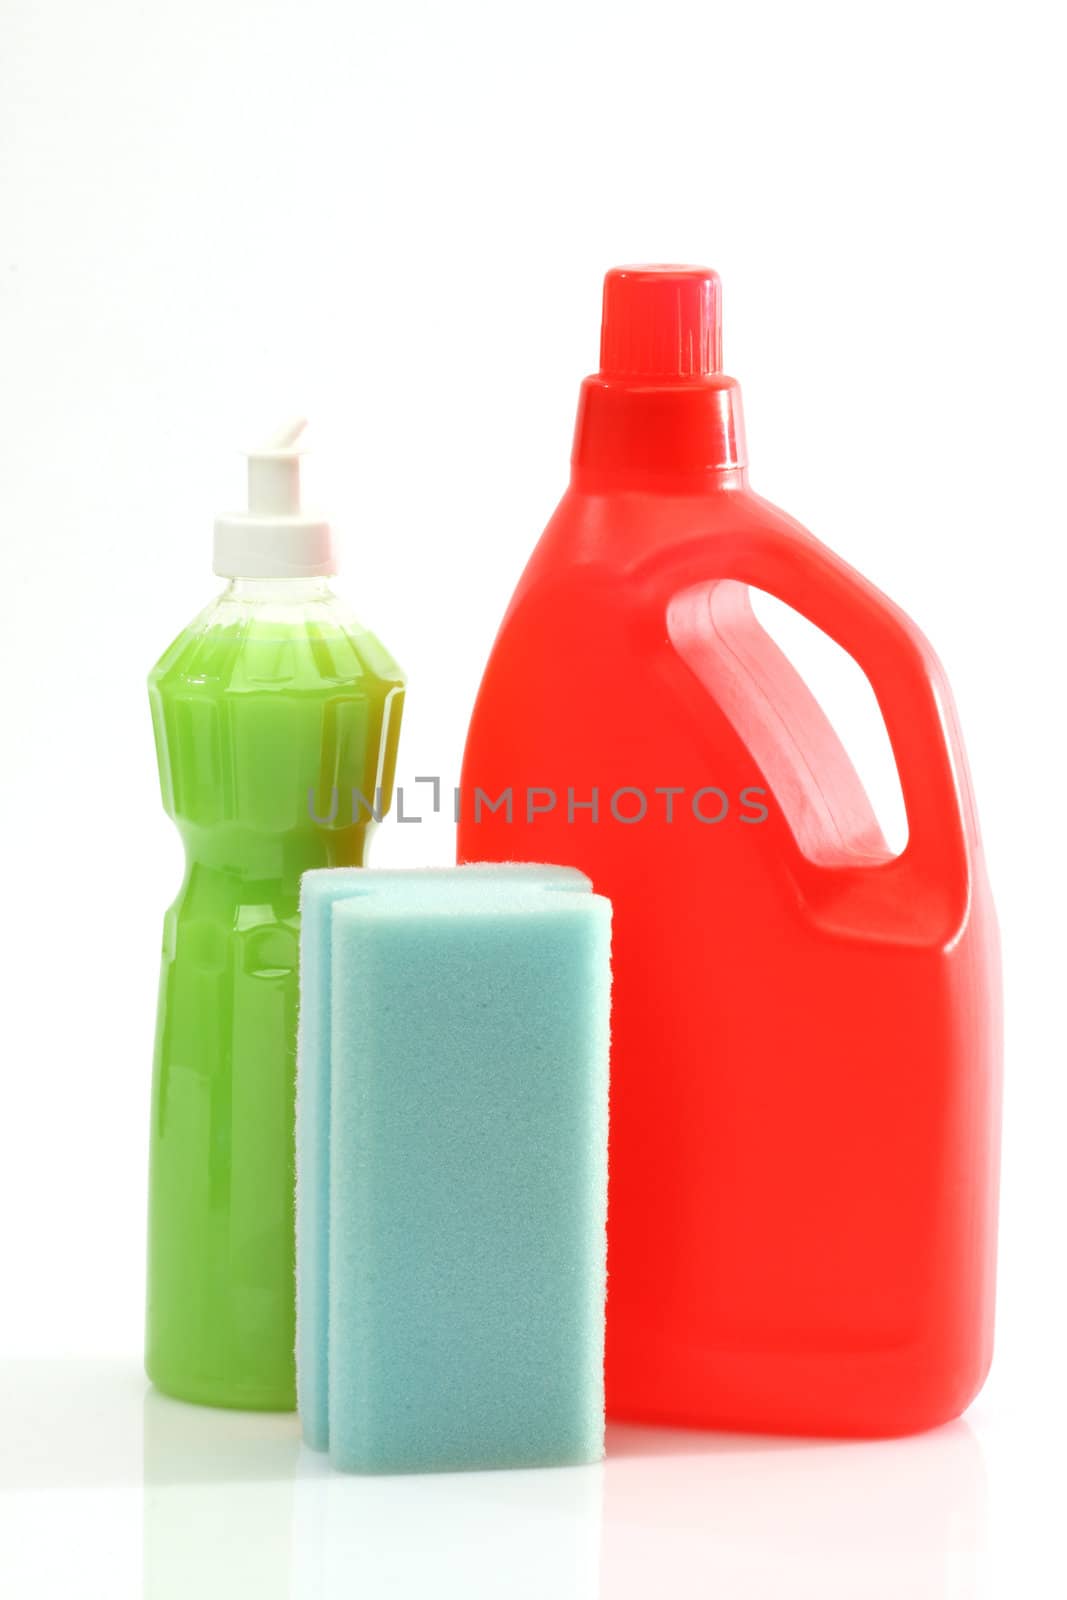 detergent bottles and sponge by alexkosev